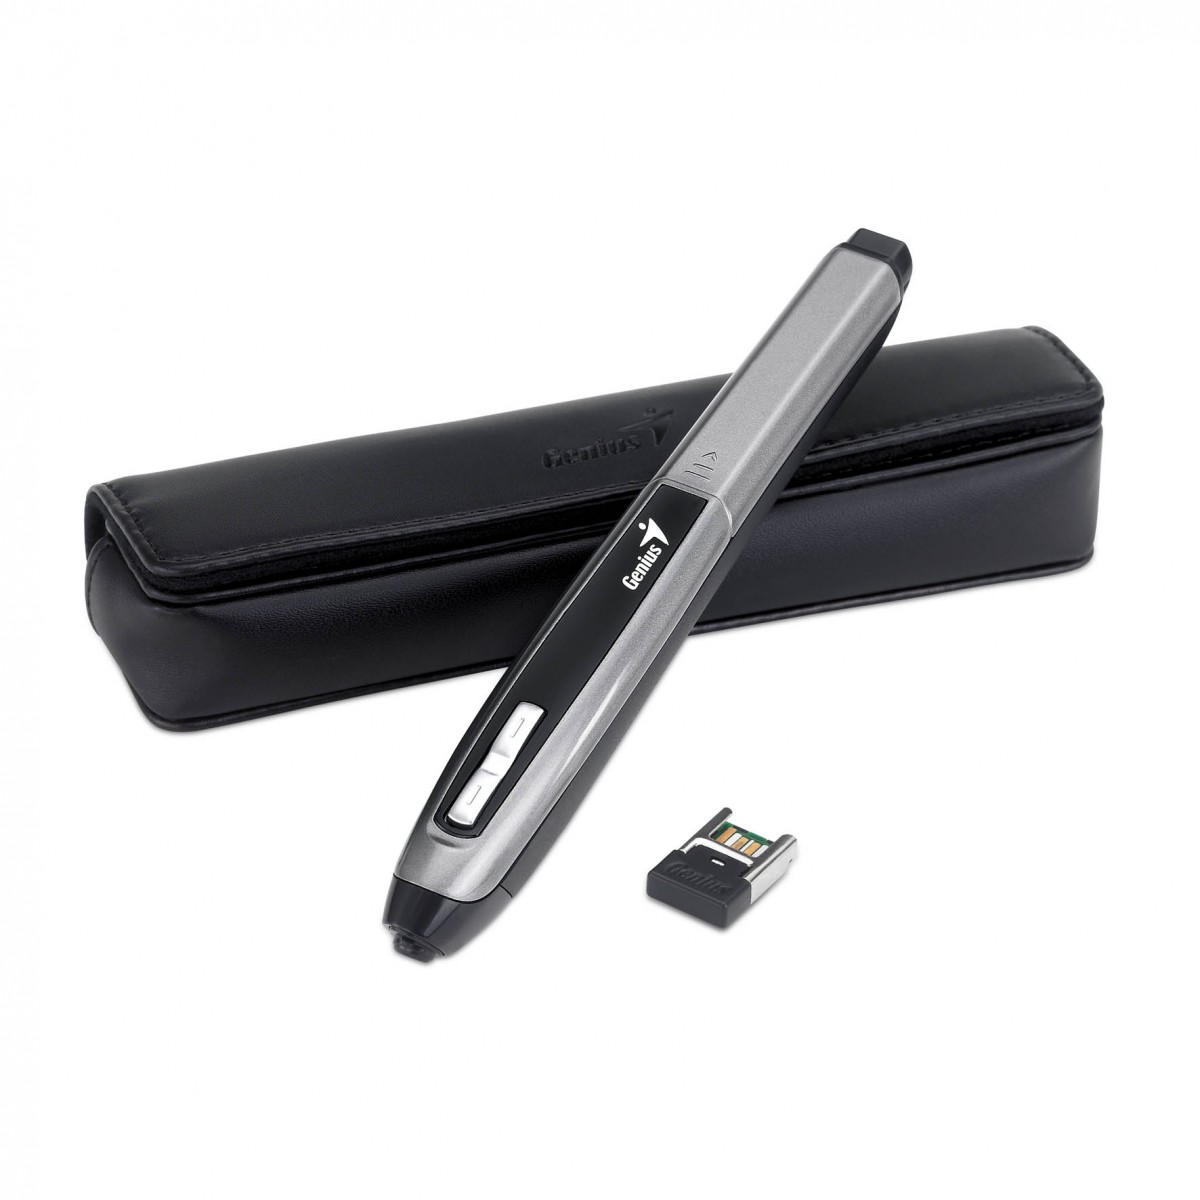 Pen Mouse 2.4Ghz USB 1200DPI com Receptor Nano - Genius